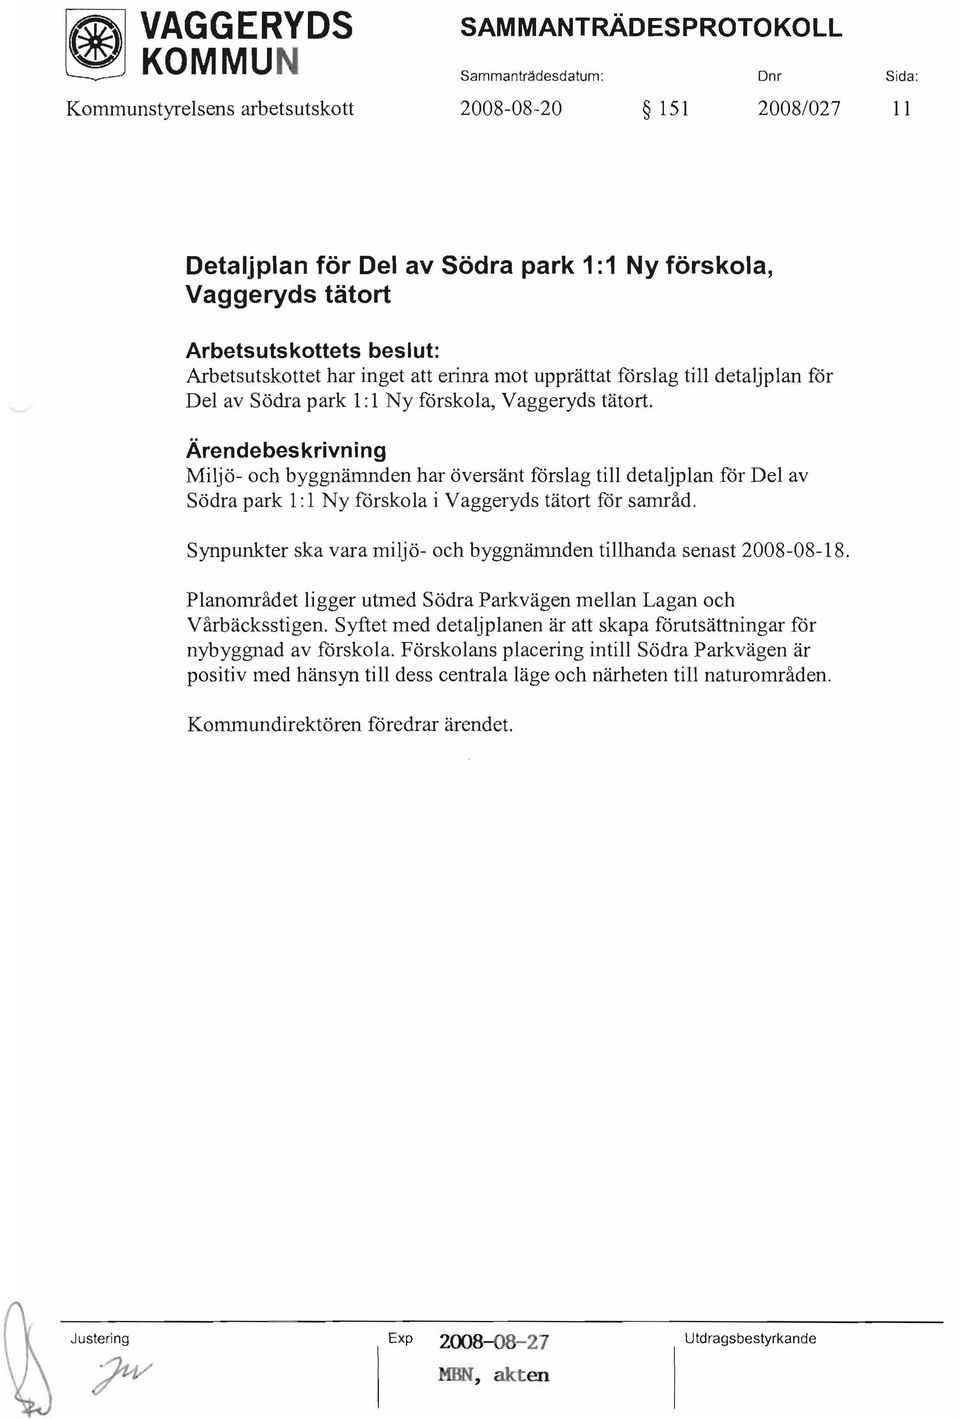 Miljö- och byggnämnden har översänt förslag till detaljplan fdr Del av Södra park 1: 1 Ny fdrskola i Vaggeryds tätort fdr samråd.